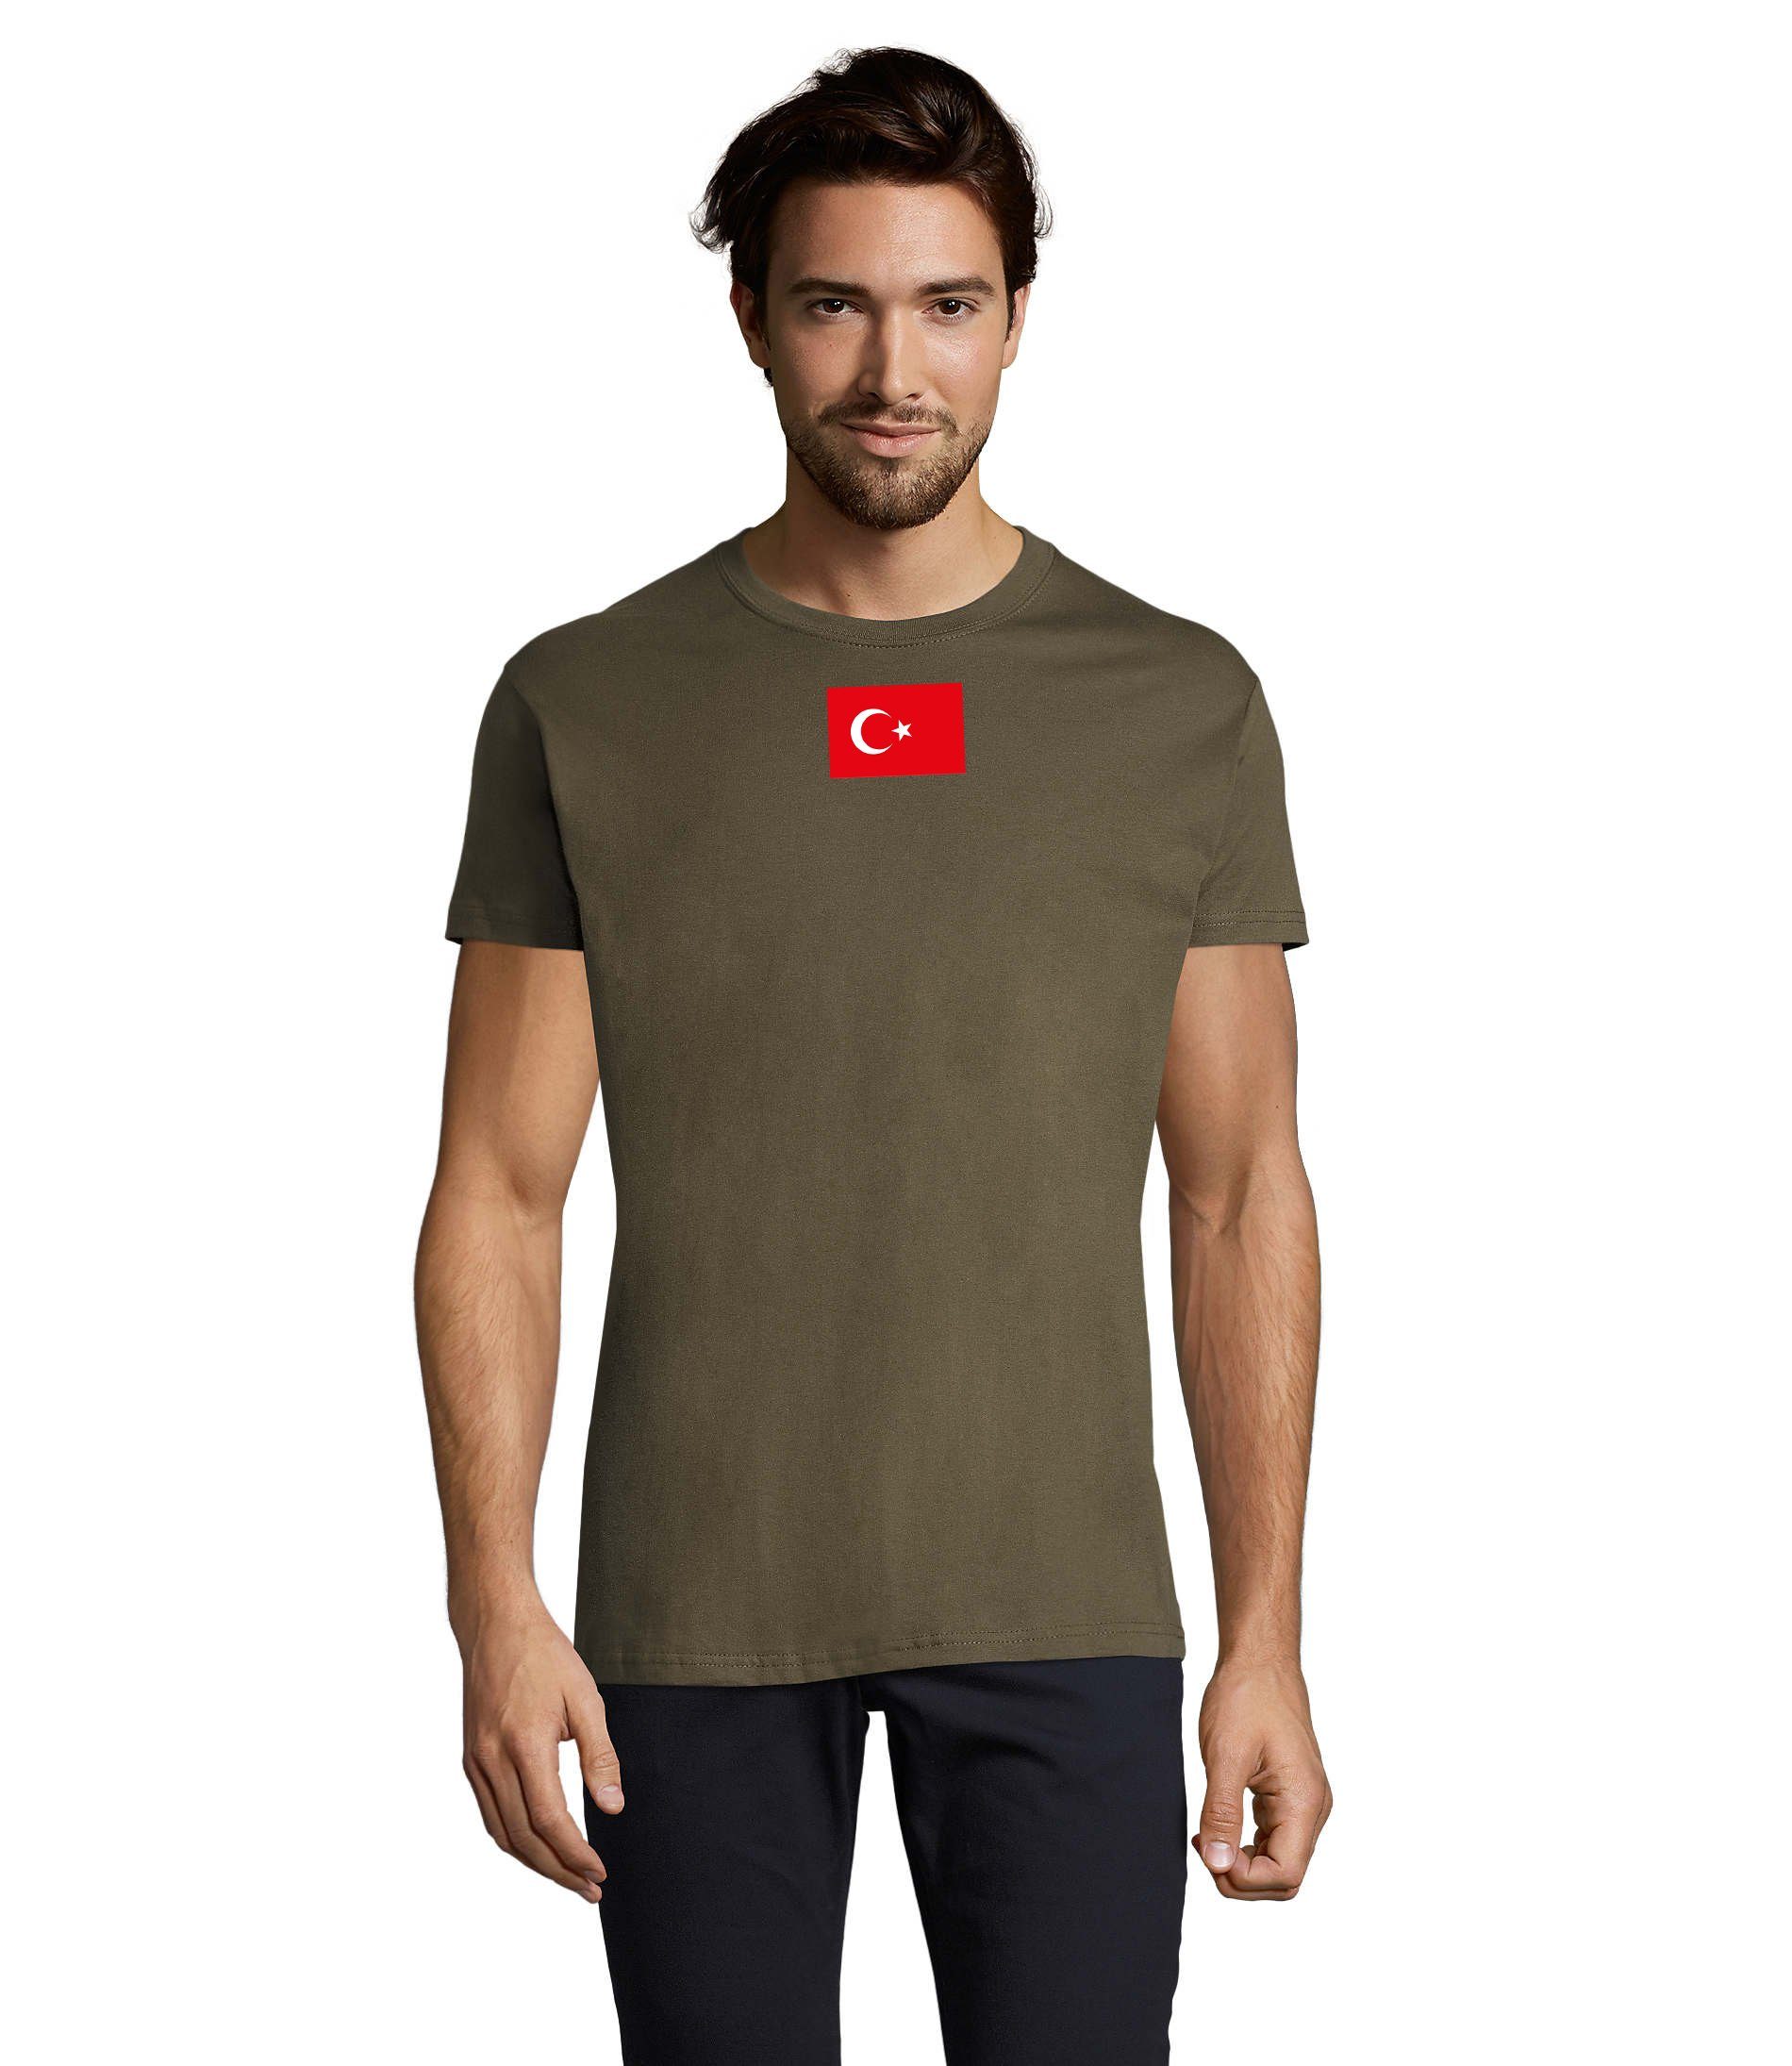 Blondie & Force Army Herren Türkei USA Air Ukraine Peace Armee Turkey T-Shirt Nato Brownie